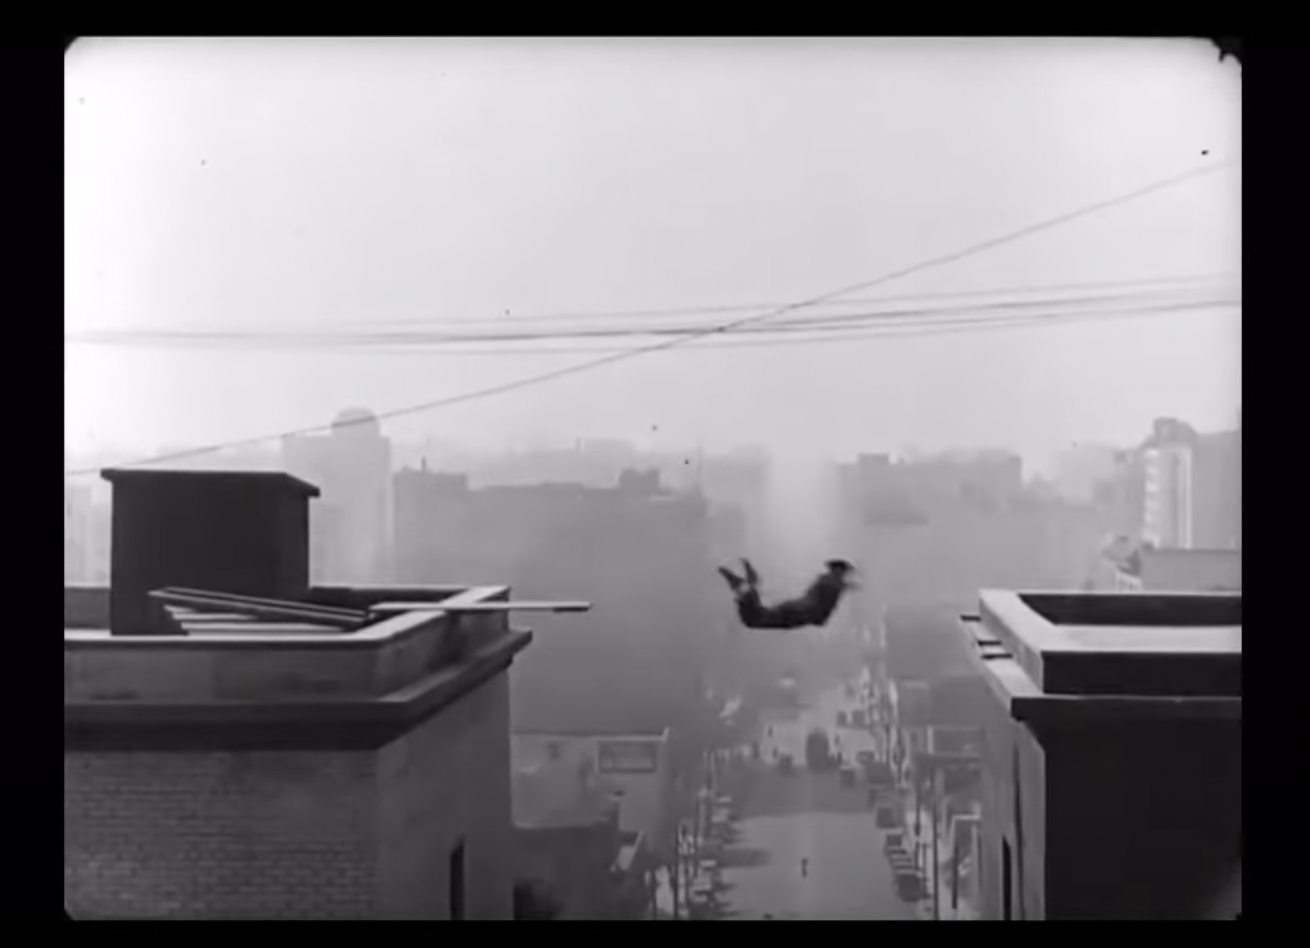 Man Jumps Between Buildings